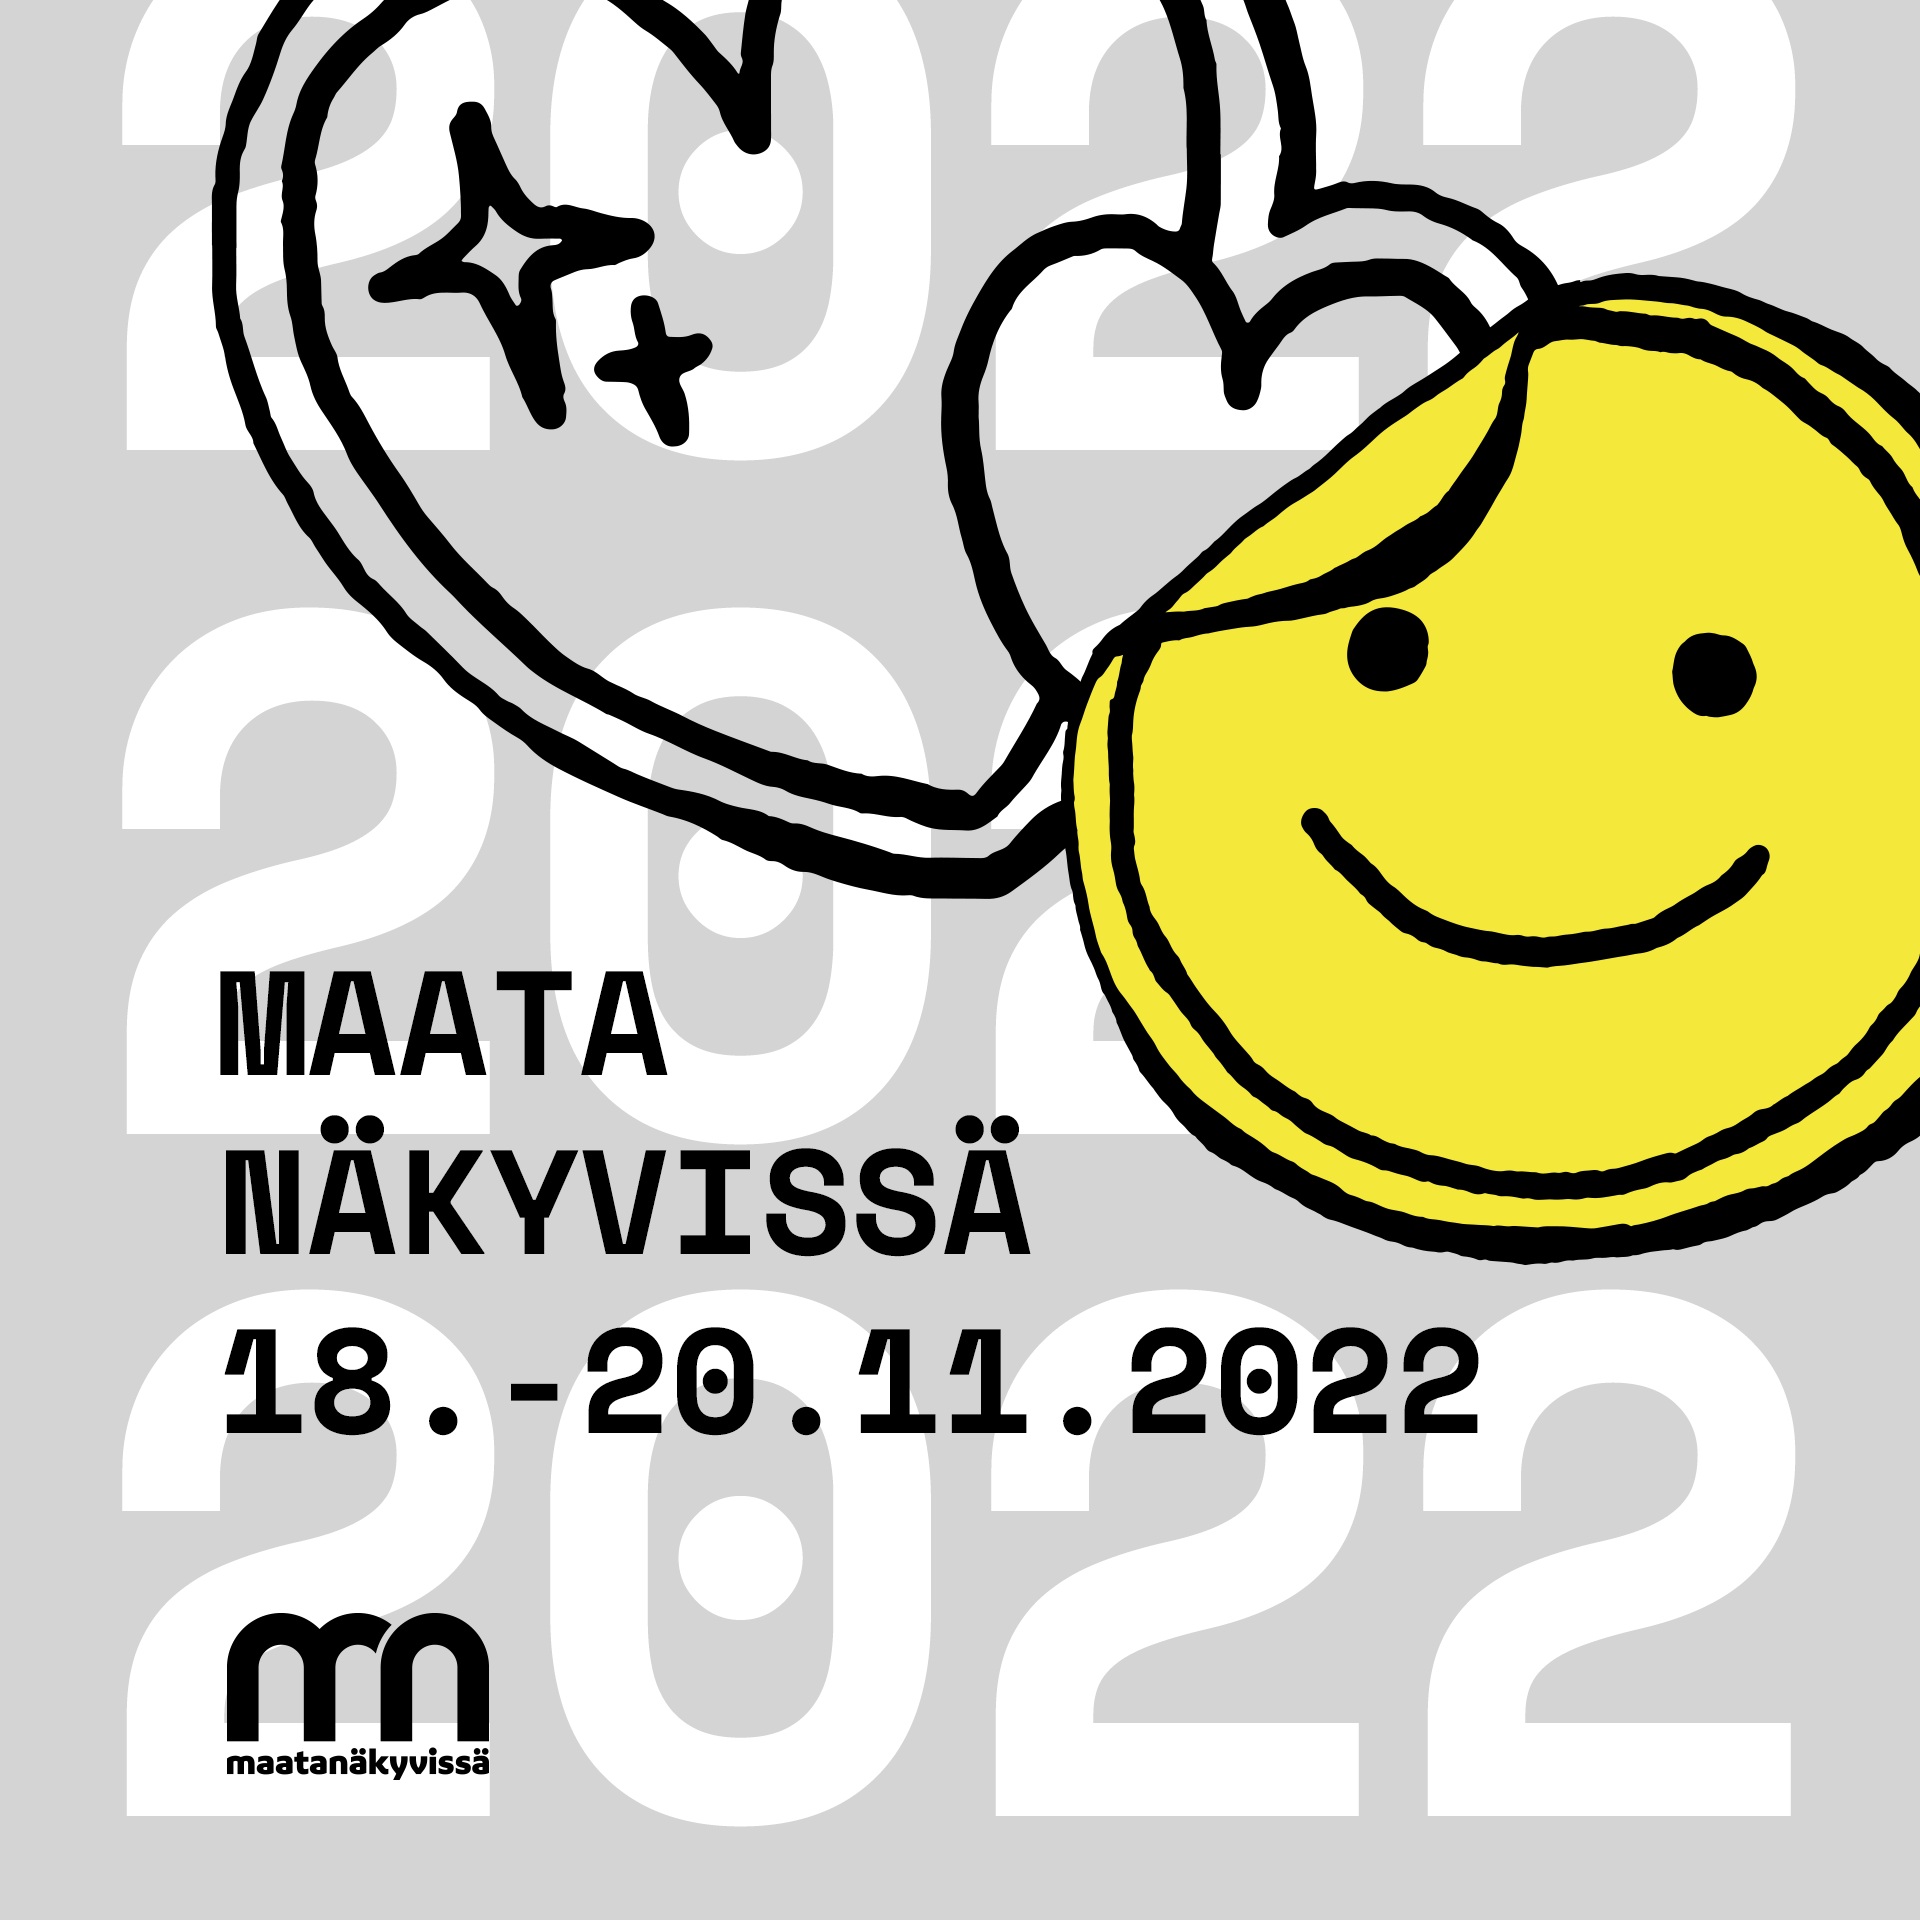 Retki Maata Näkyvissä festareille Turkuun 18.-20.11.2022. Ilmoittaudu nyt mukaan 14.10. mennessä.